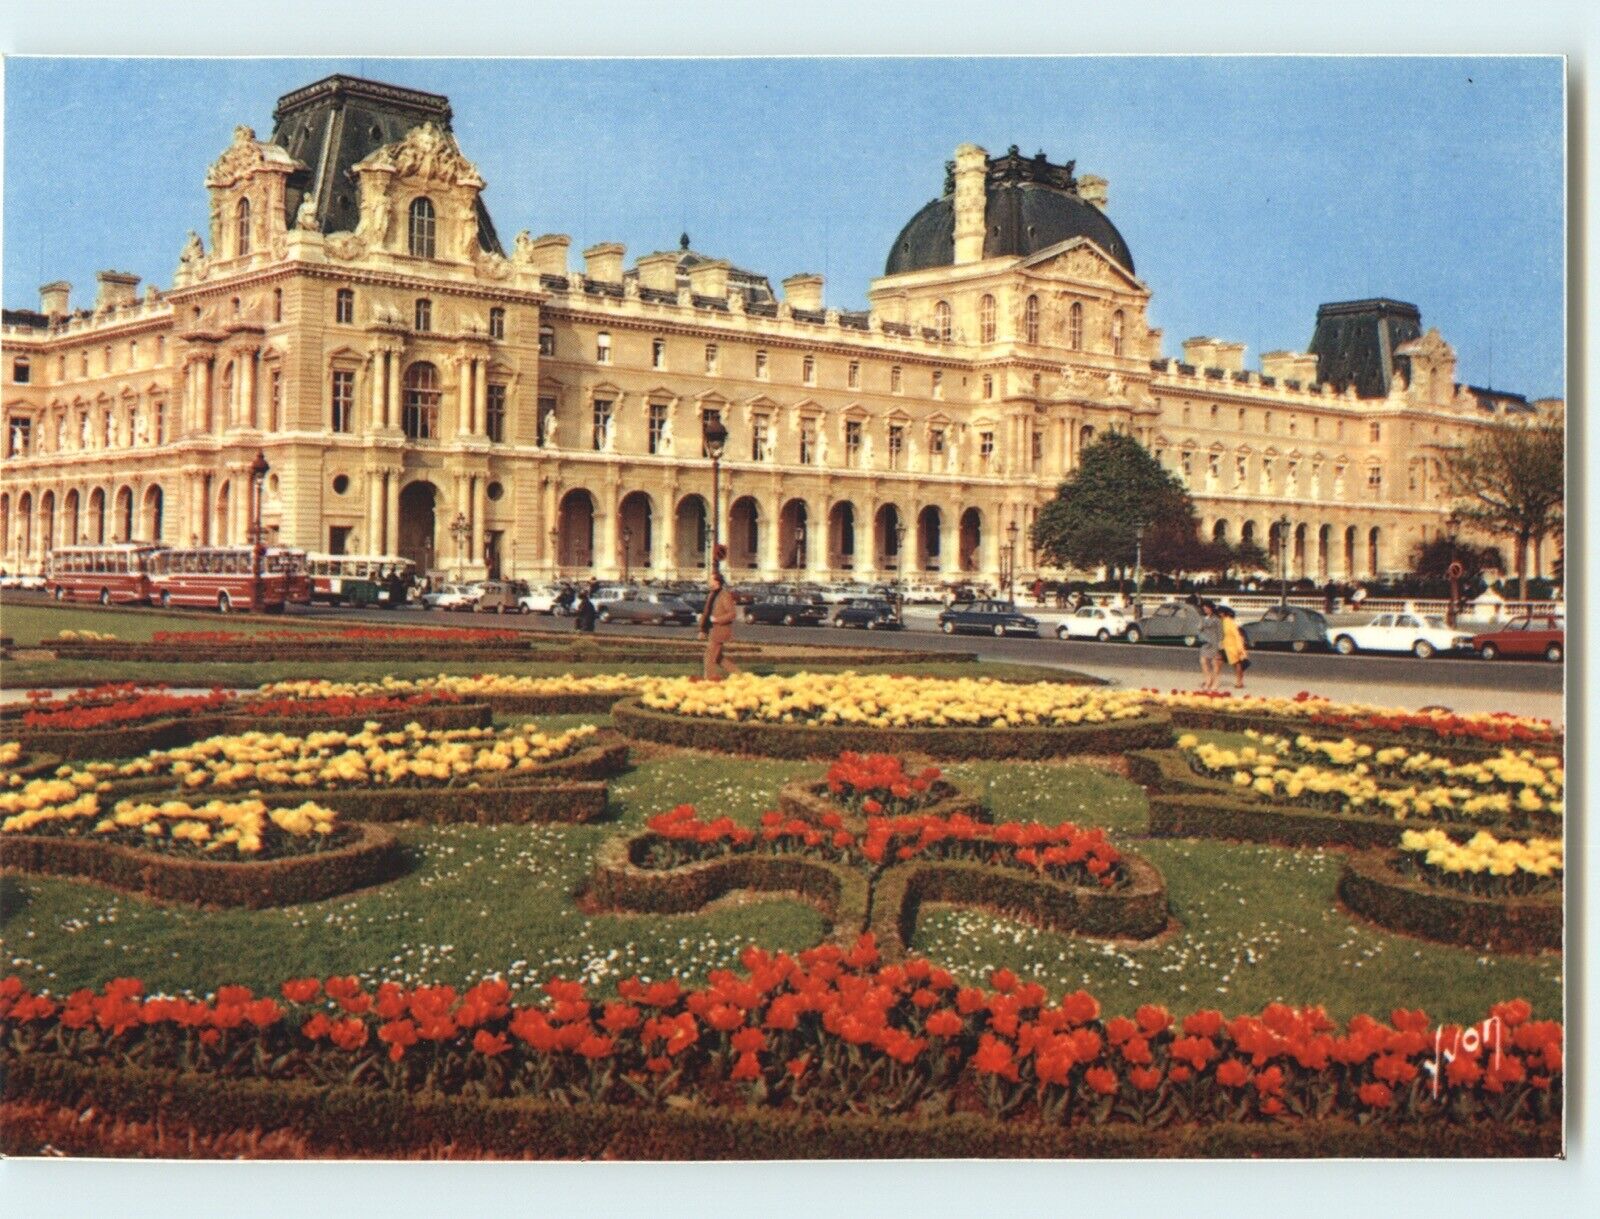 Postcard: Tuileries Garden & Louvre Palace - Paris, France